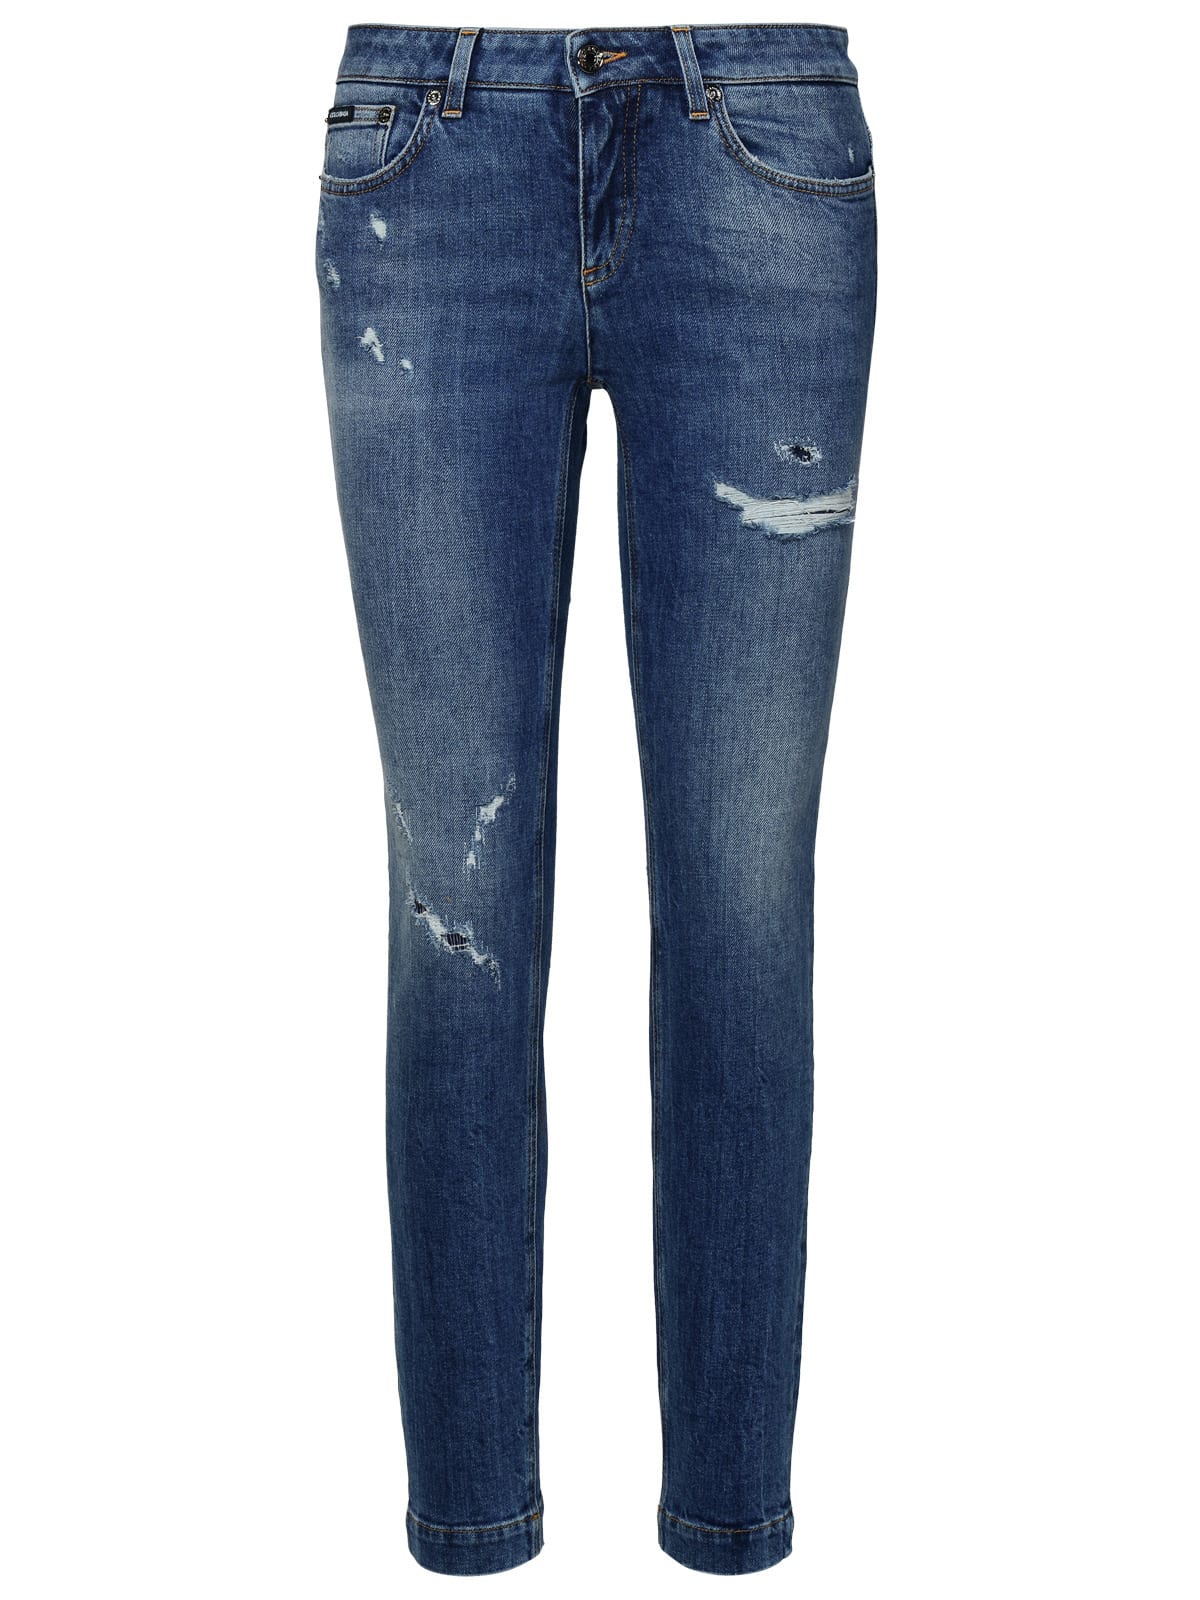 Shop Dolce & Gabbana Blue Cotton Jeans